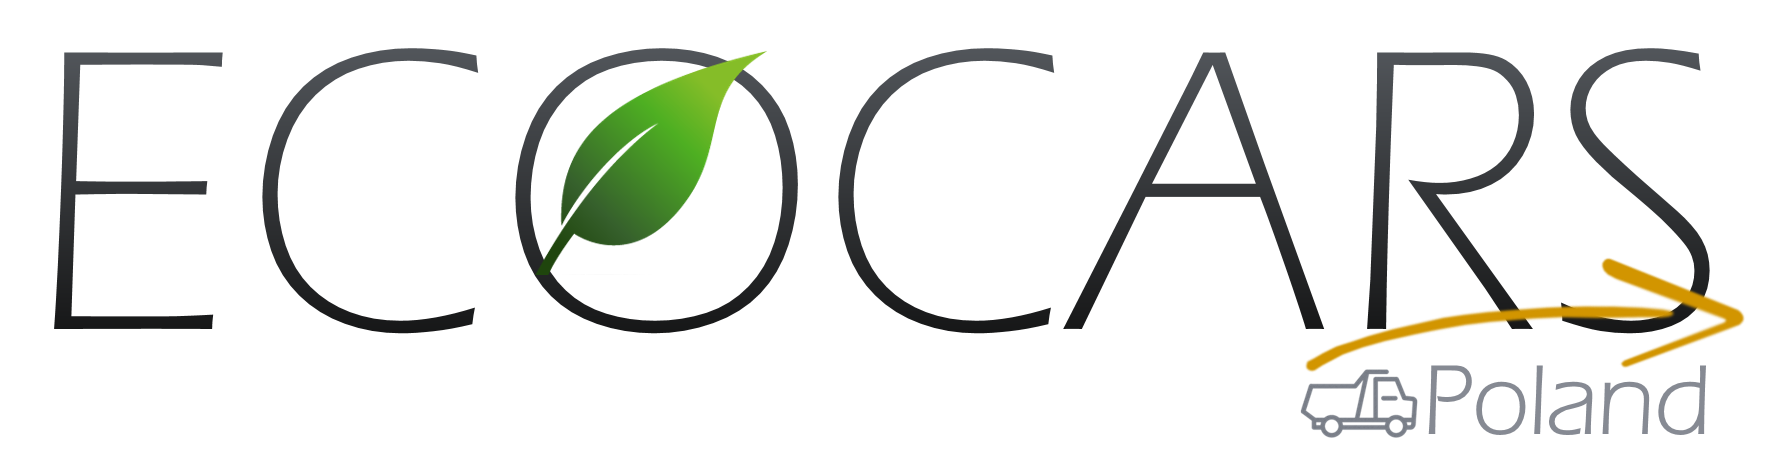 cropped logotyp Ecocars Poland - Cewka hydrauliczna